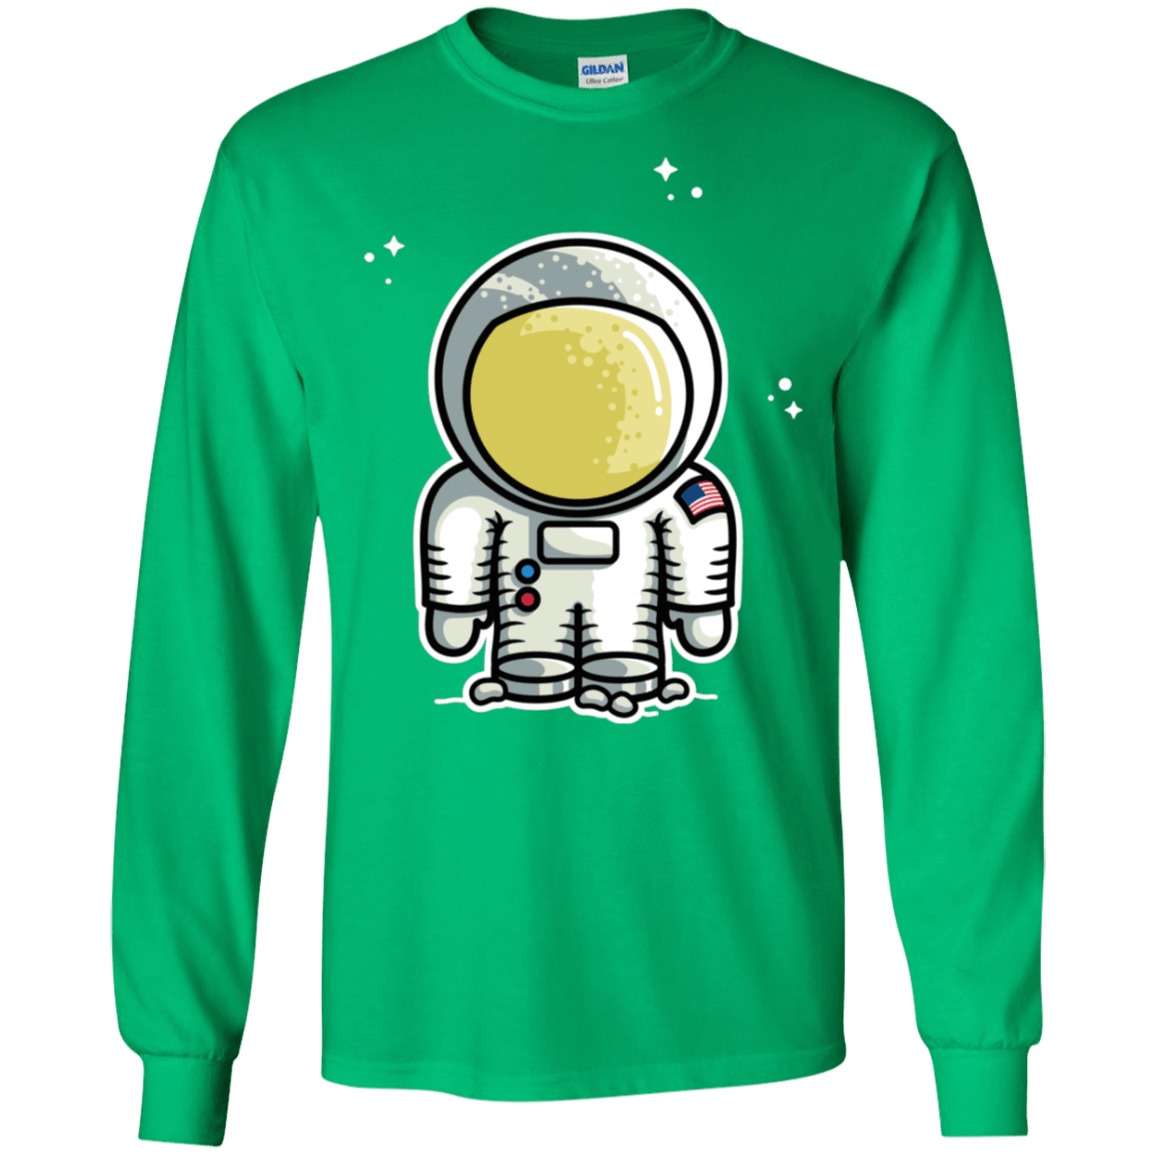 T-Shirts Irish Green / S Cute Astronaut Men's Long Sleeve T-Shirt